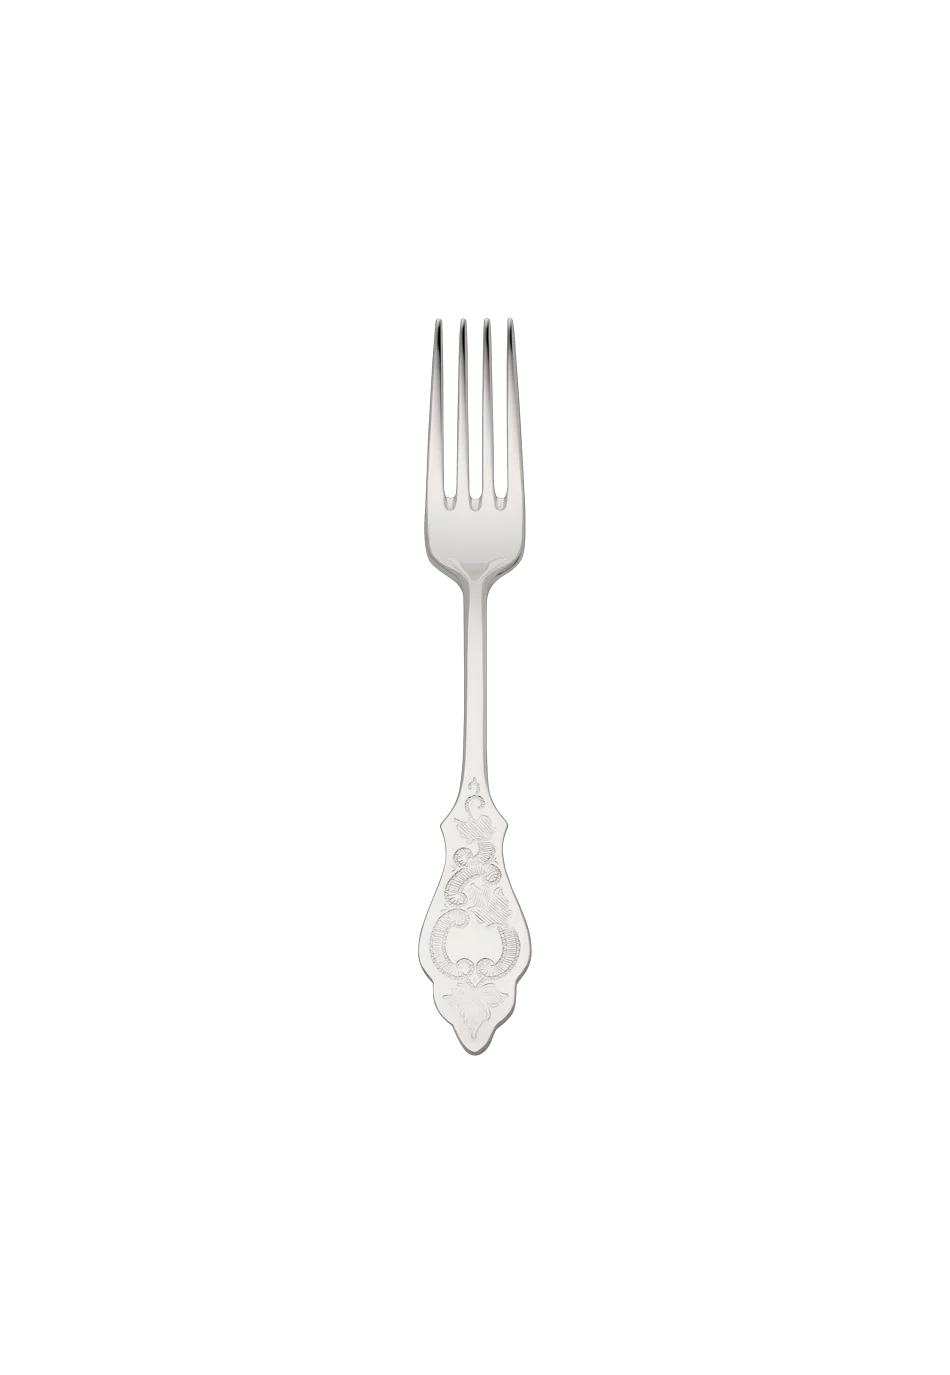 Ostfriesen Children's Fork (18/8 stainless steel)